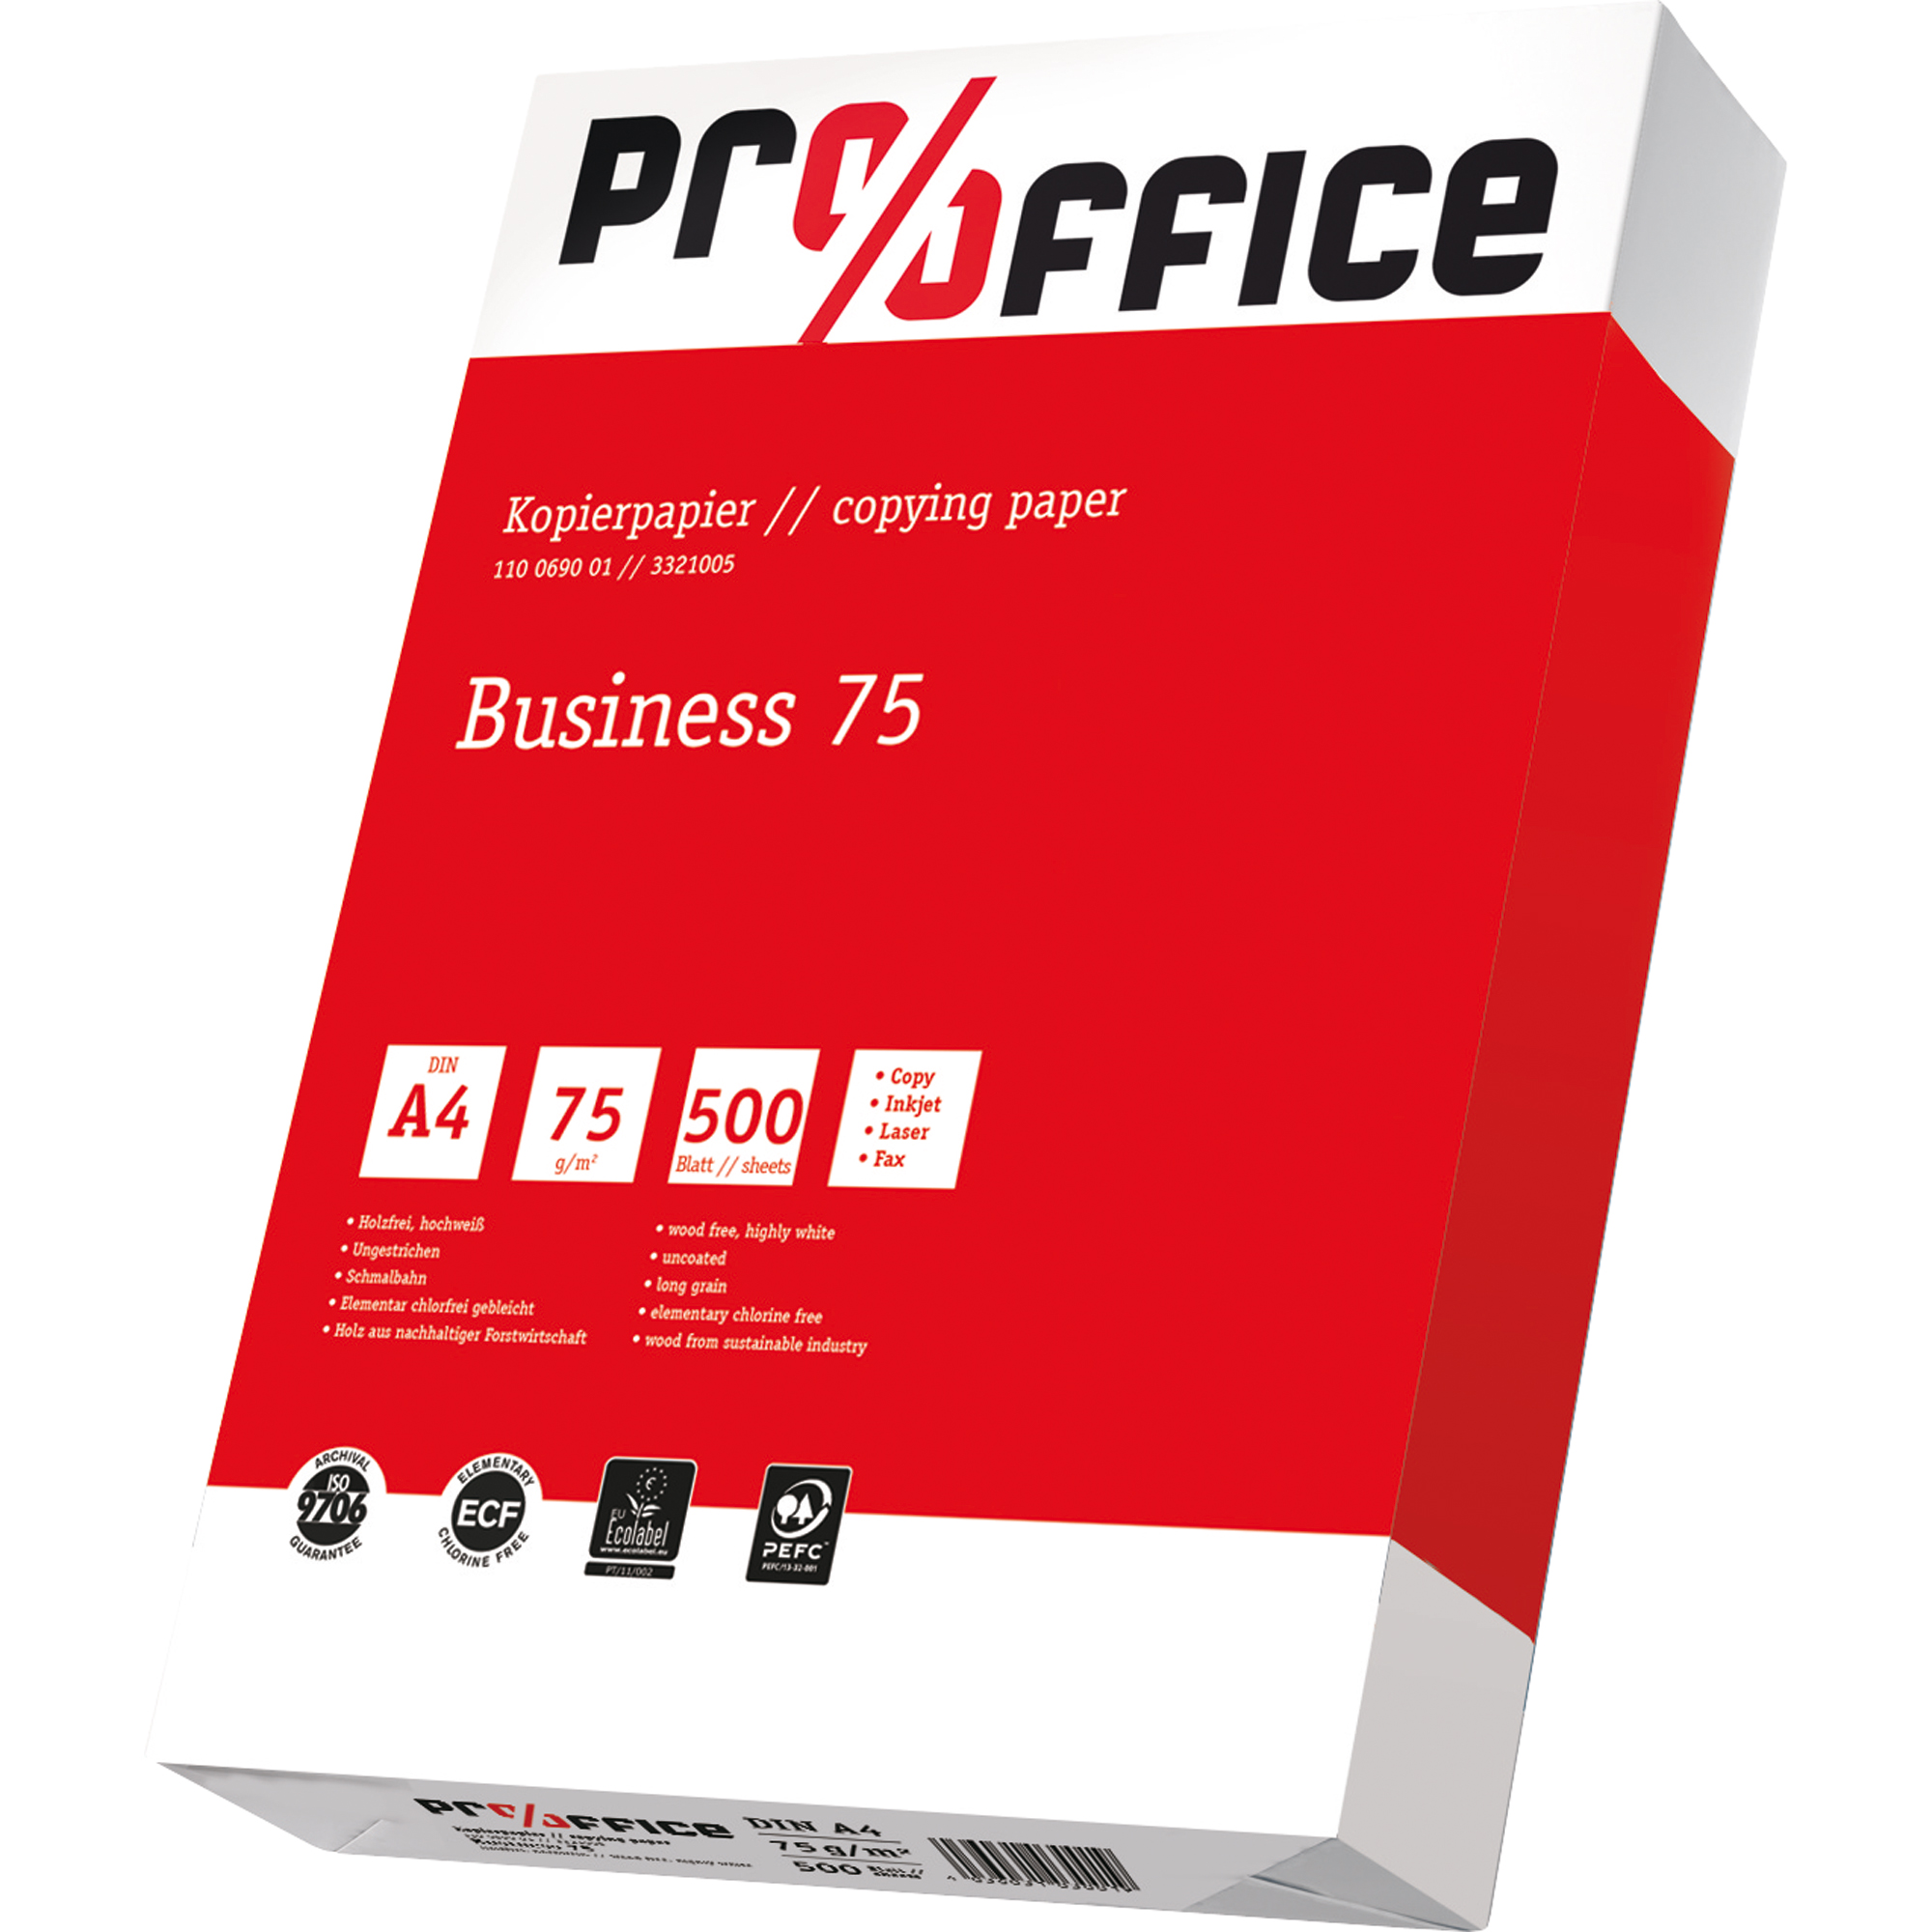 Pro/Office Kopierpapier Business DIN A4 75 g/m²